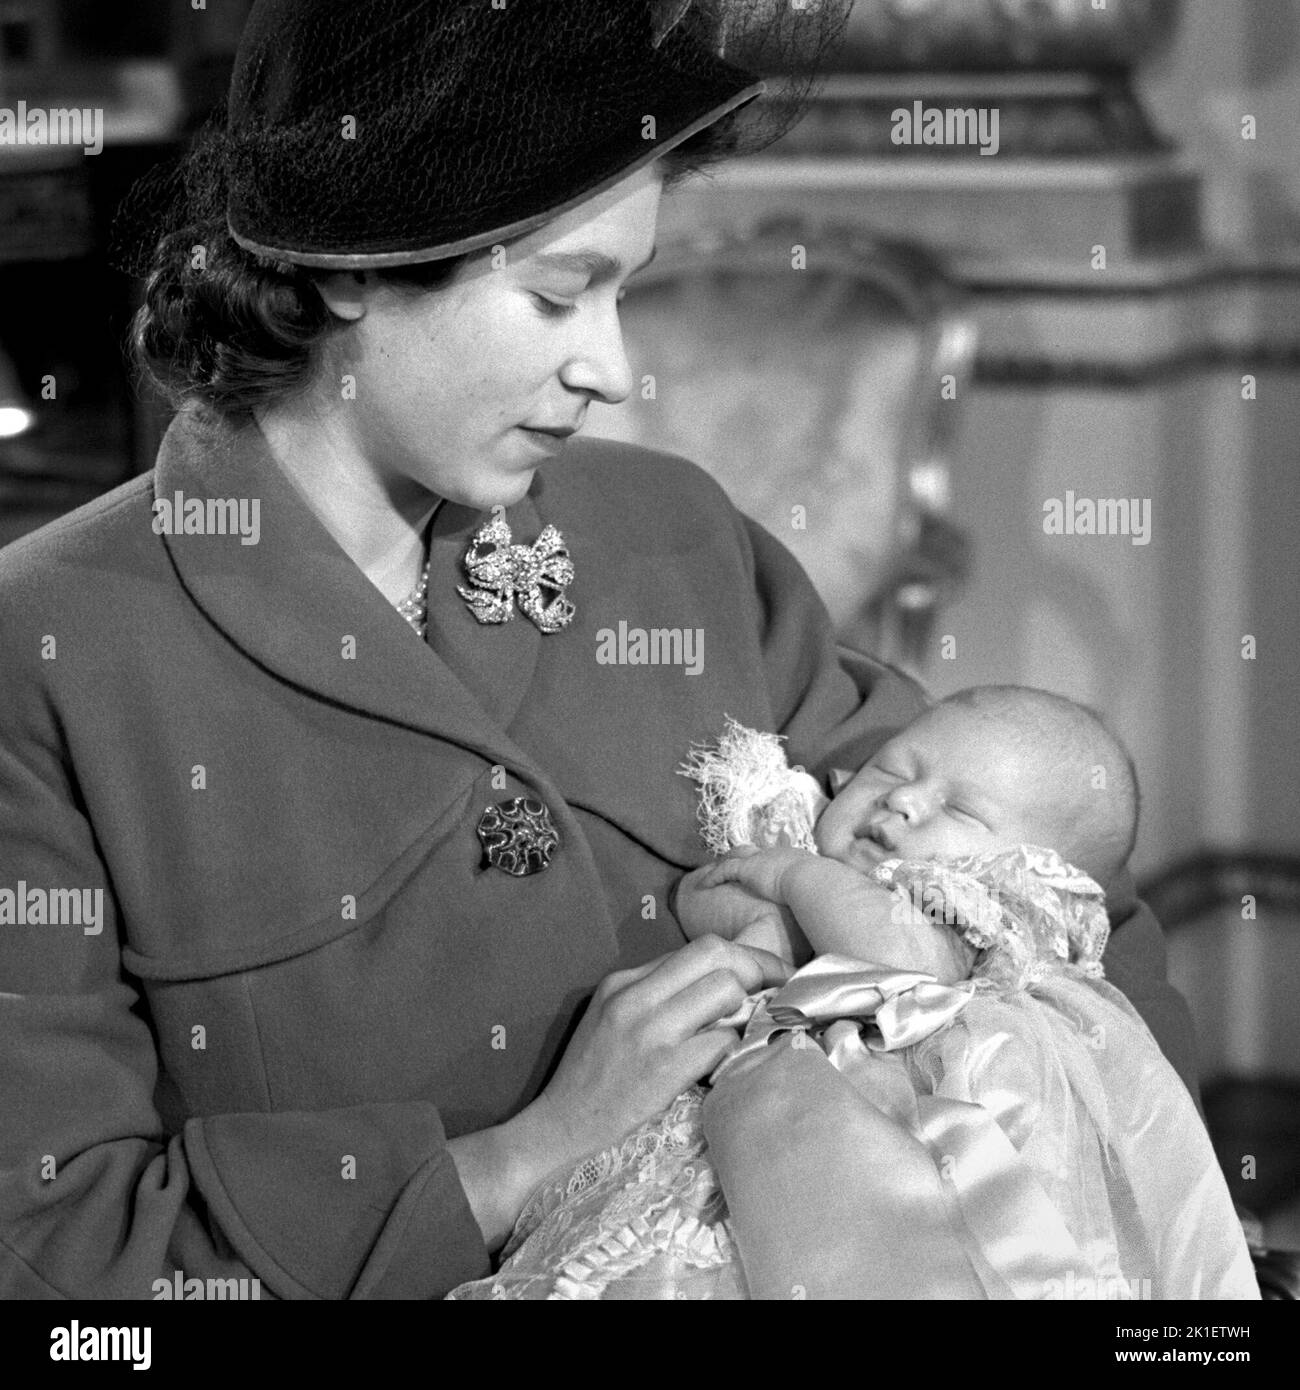 Aktenfoto vom 15/12/1948 von Prinzessin Elizabeth (jetzt Königin Elizabeth II.), die ihren Sohn Prinz Charles nach seiner Taufzeremonie im Buckingham Palace hielt. Ausgabedatum: Sonntag, 18. September 2022.. Bildnachweis sollte lauten: PA Wire Stockfoto